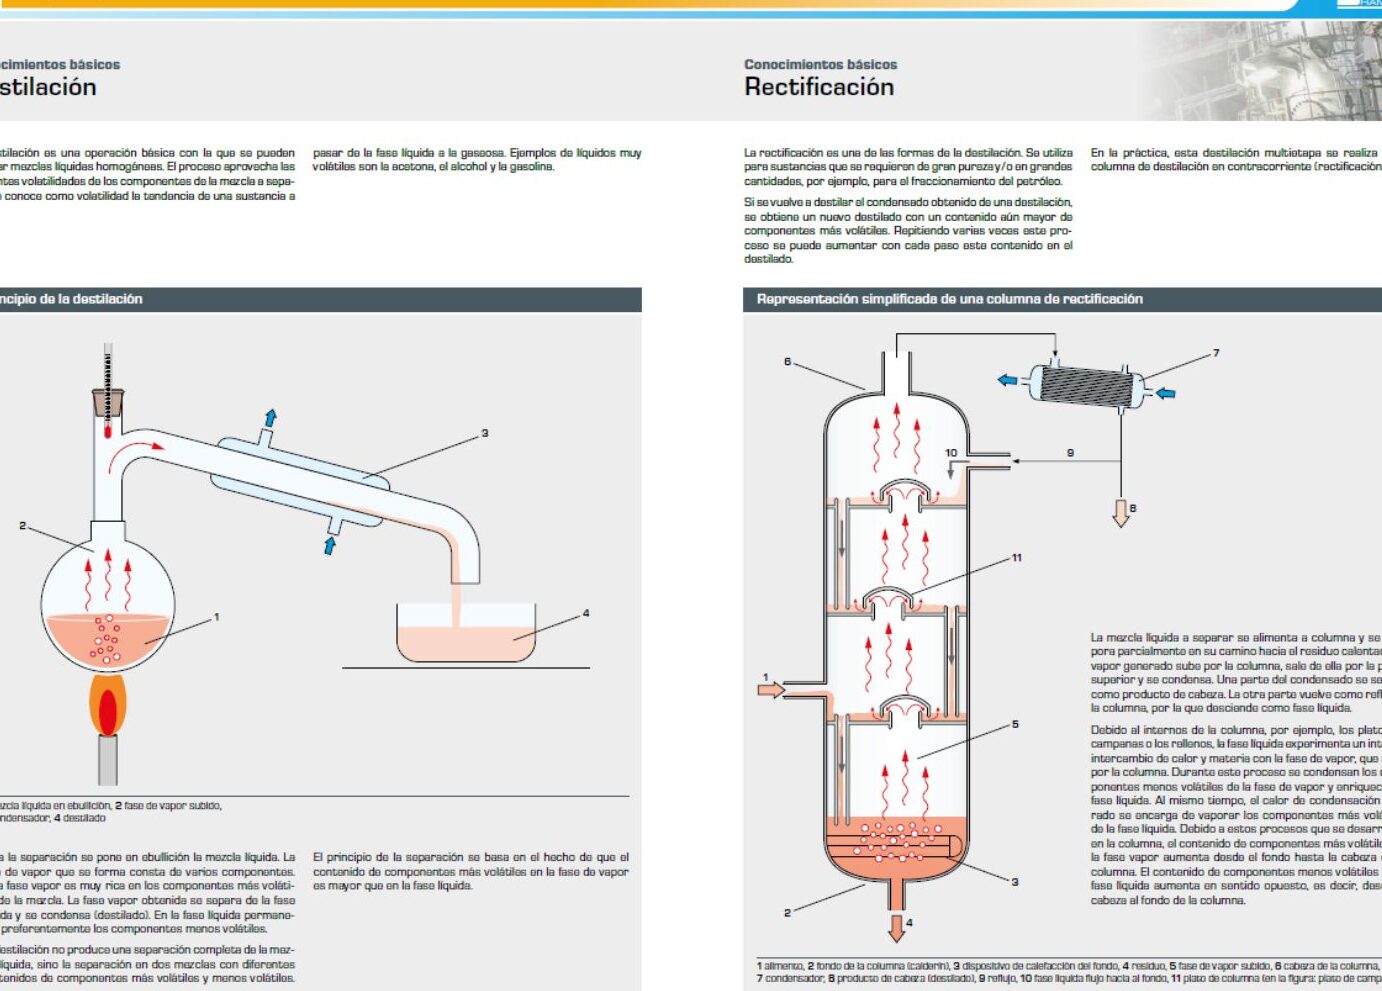 Destillationsdiagramm: Eine Schritt-für-Schritt-Anleitung zur Trennung von Flüssigkeiten.